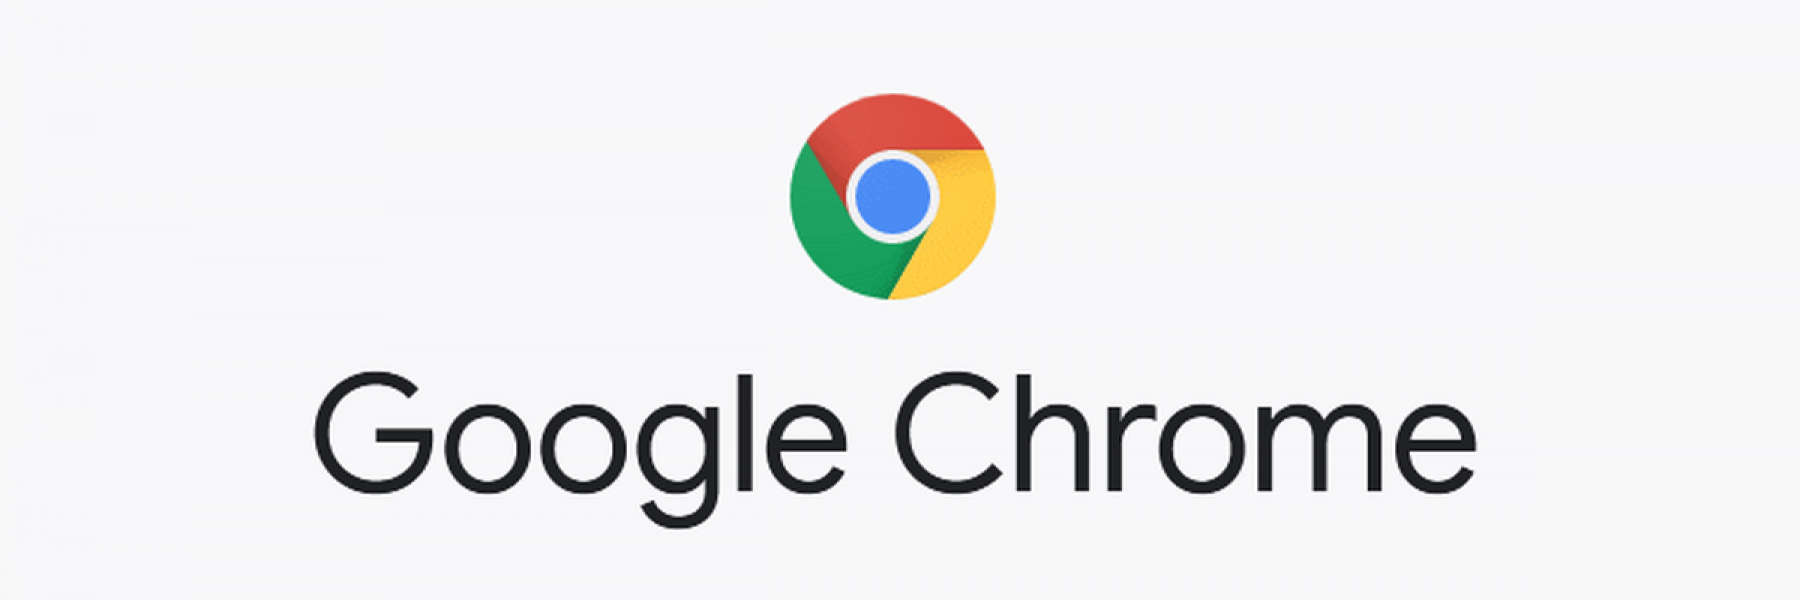 تحديثات جديدة على متصفح غوغل "Chrome" لزيادة الأمان والخصوصية للمستخدمين!